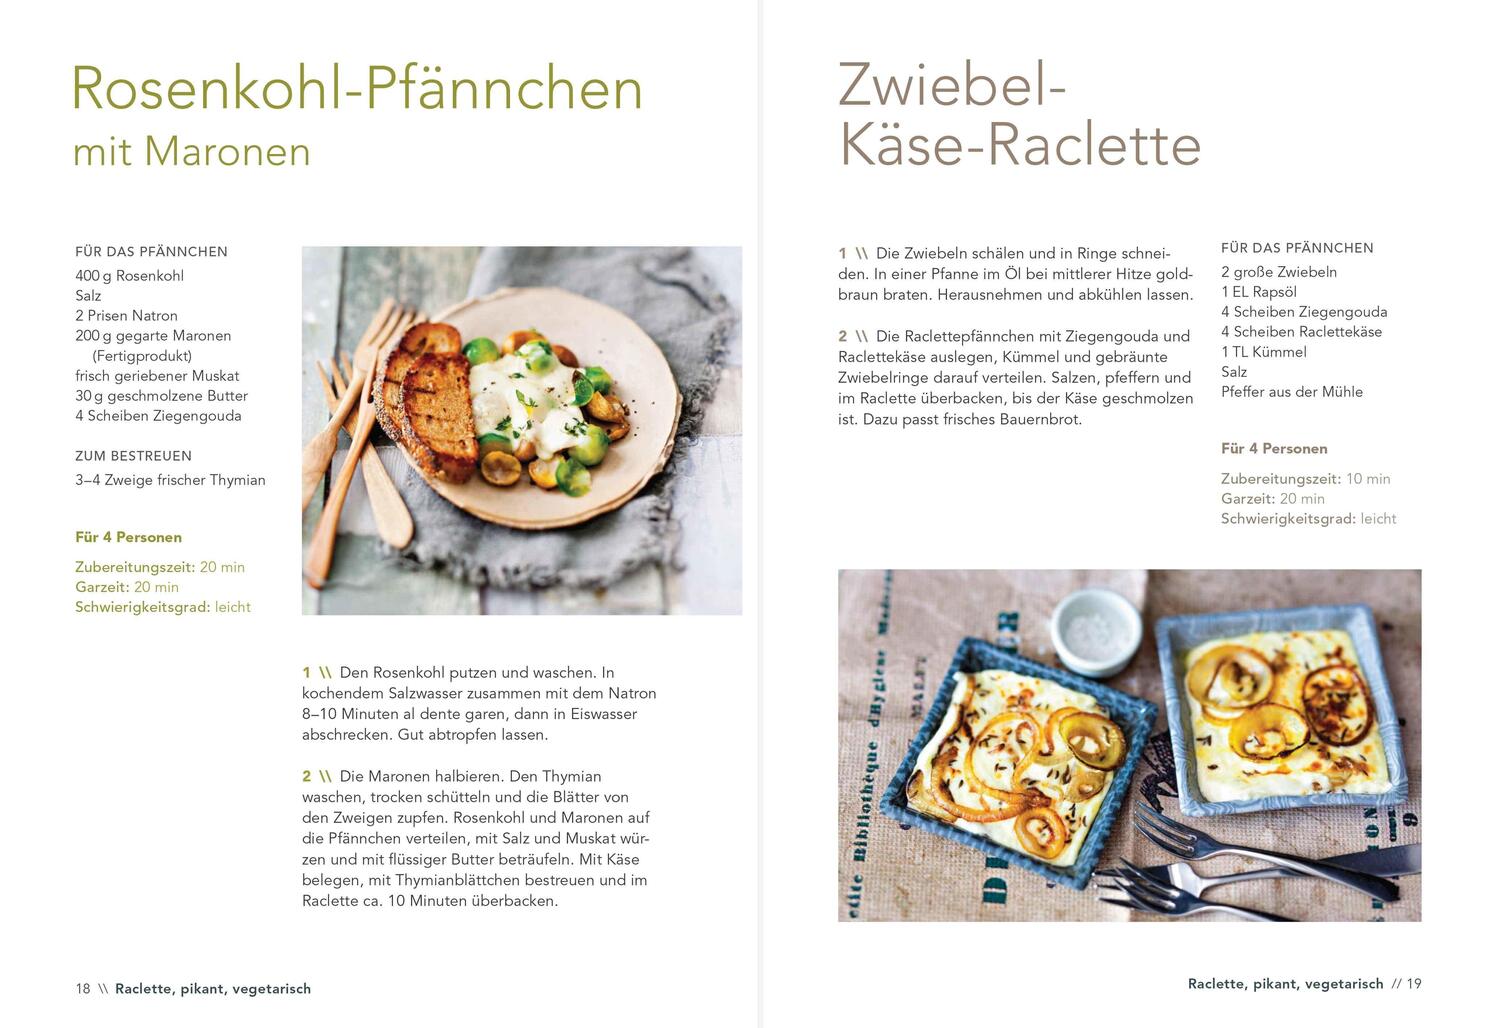 Bild: 9783809436669 | Raclette - Die besten Rezepte | Carina Mira | Buch | 96 S. | Deutsch